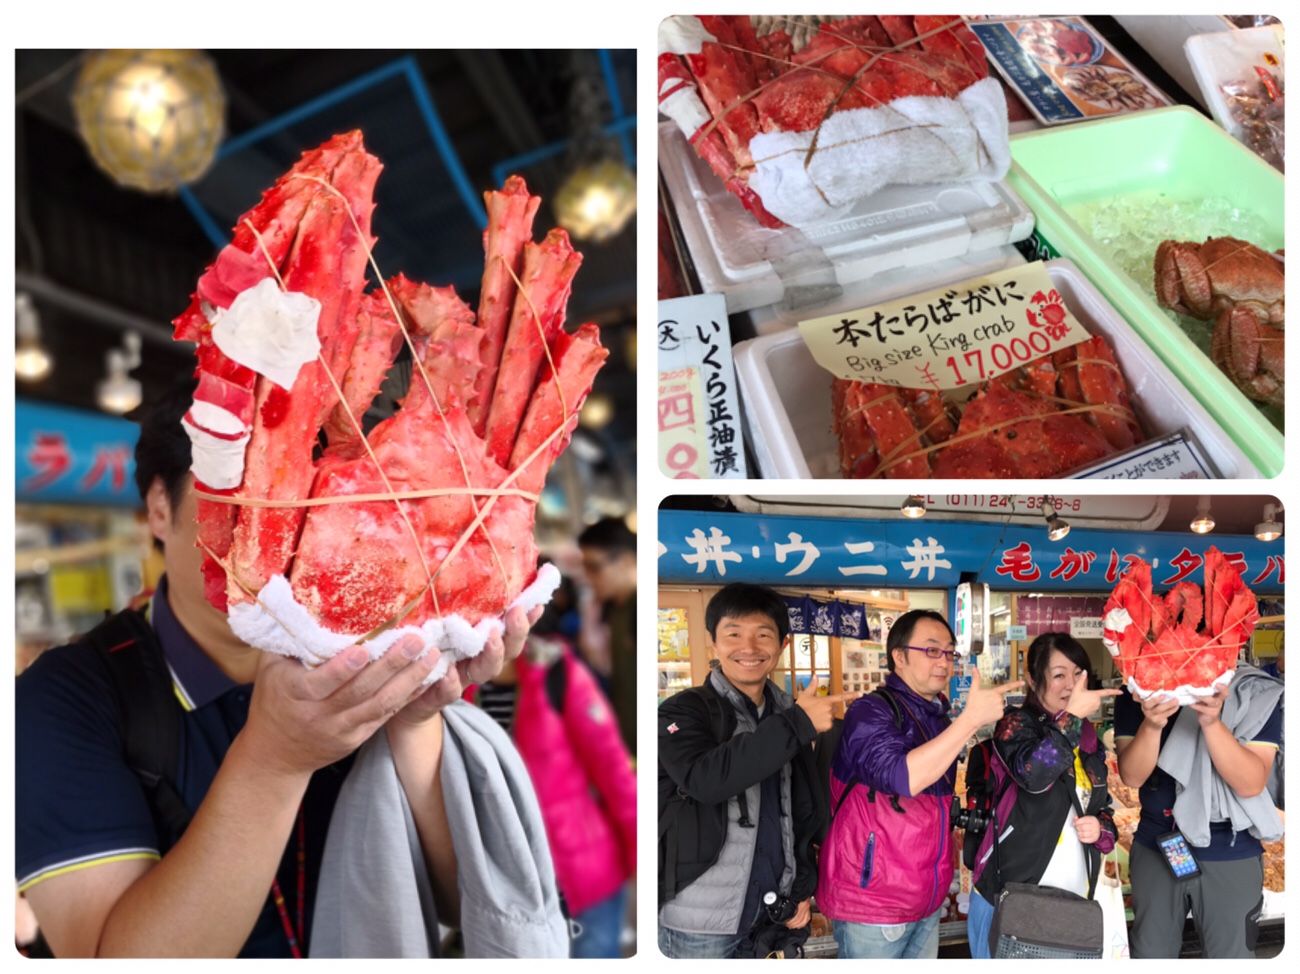 二条市場で海鮮丼を食べたあとの記念撮影 札幌グルメ